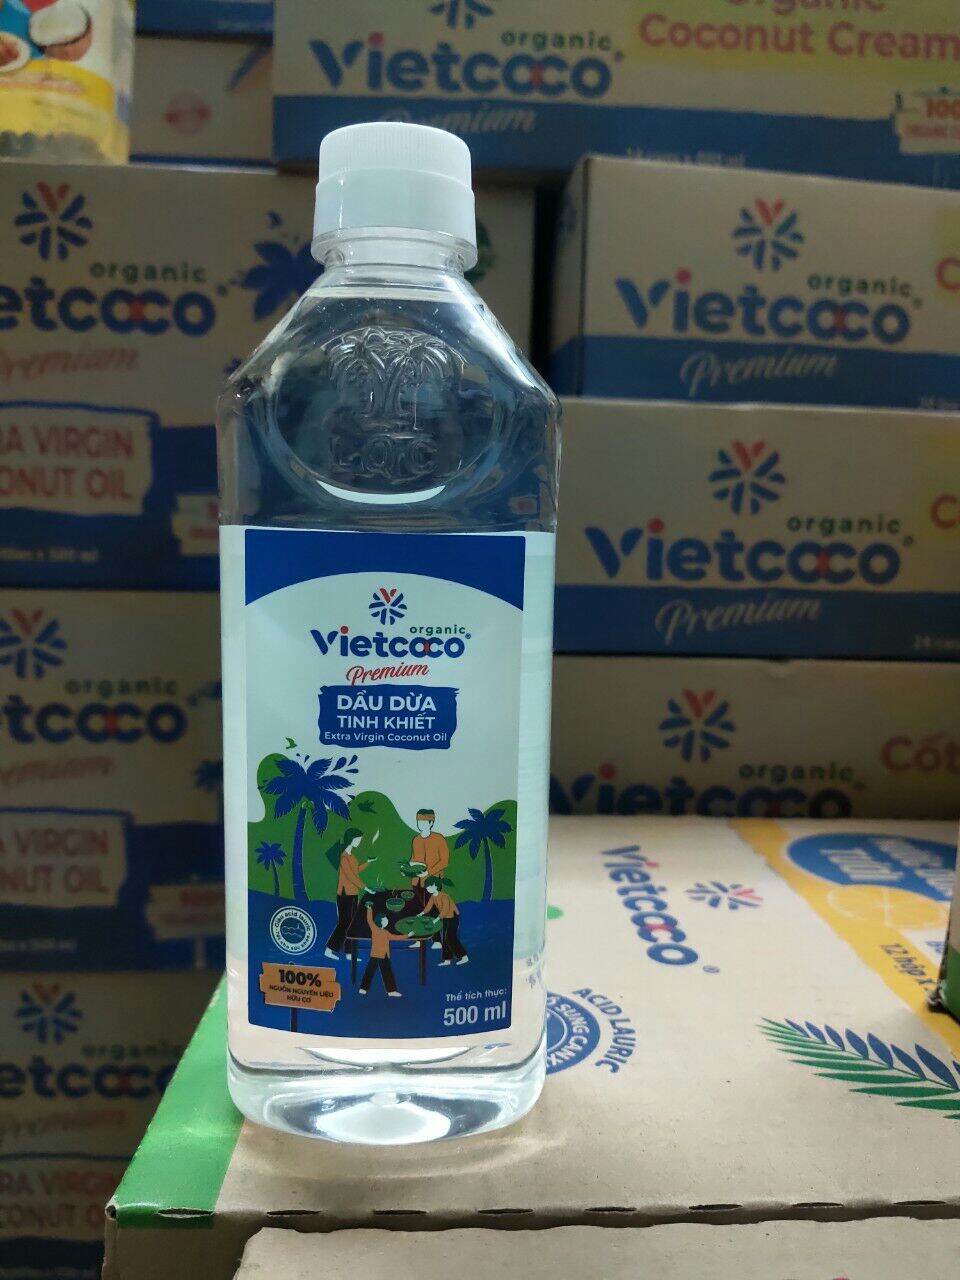 Dầu dừa Organic Vietcoco ép lạnh nguyên chất 250ml, 500ml, 1lit. Nấu ăn, dưỡng Tóc, dưỡng Da...